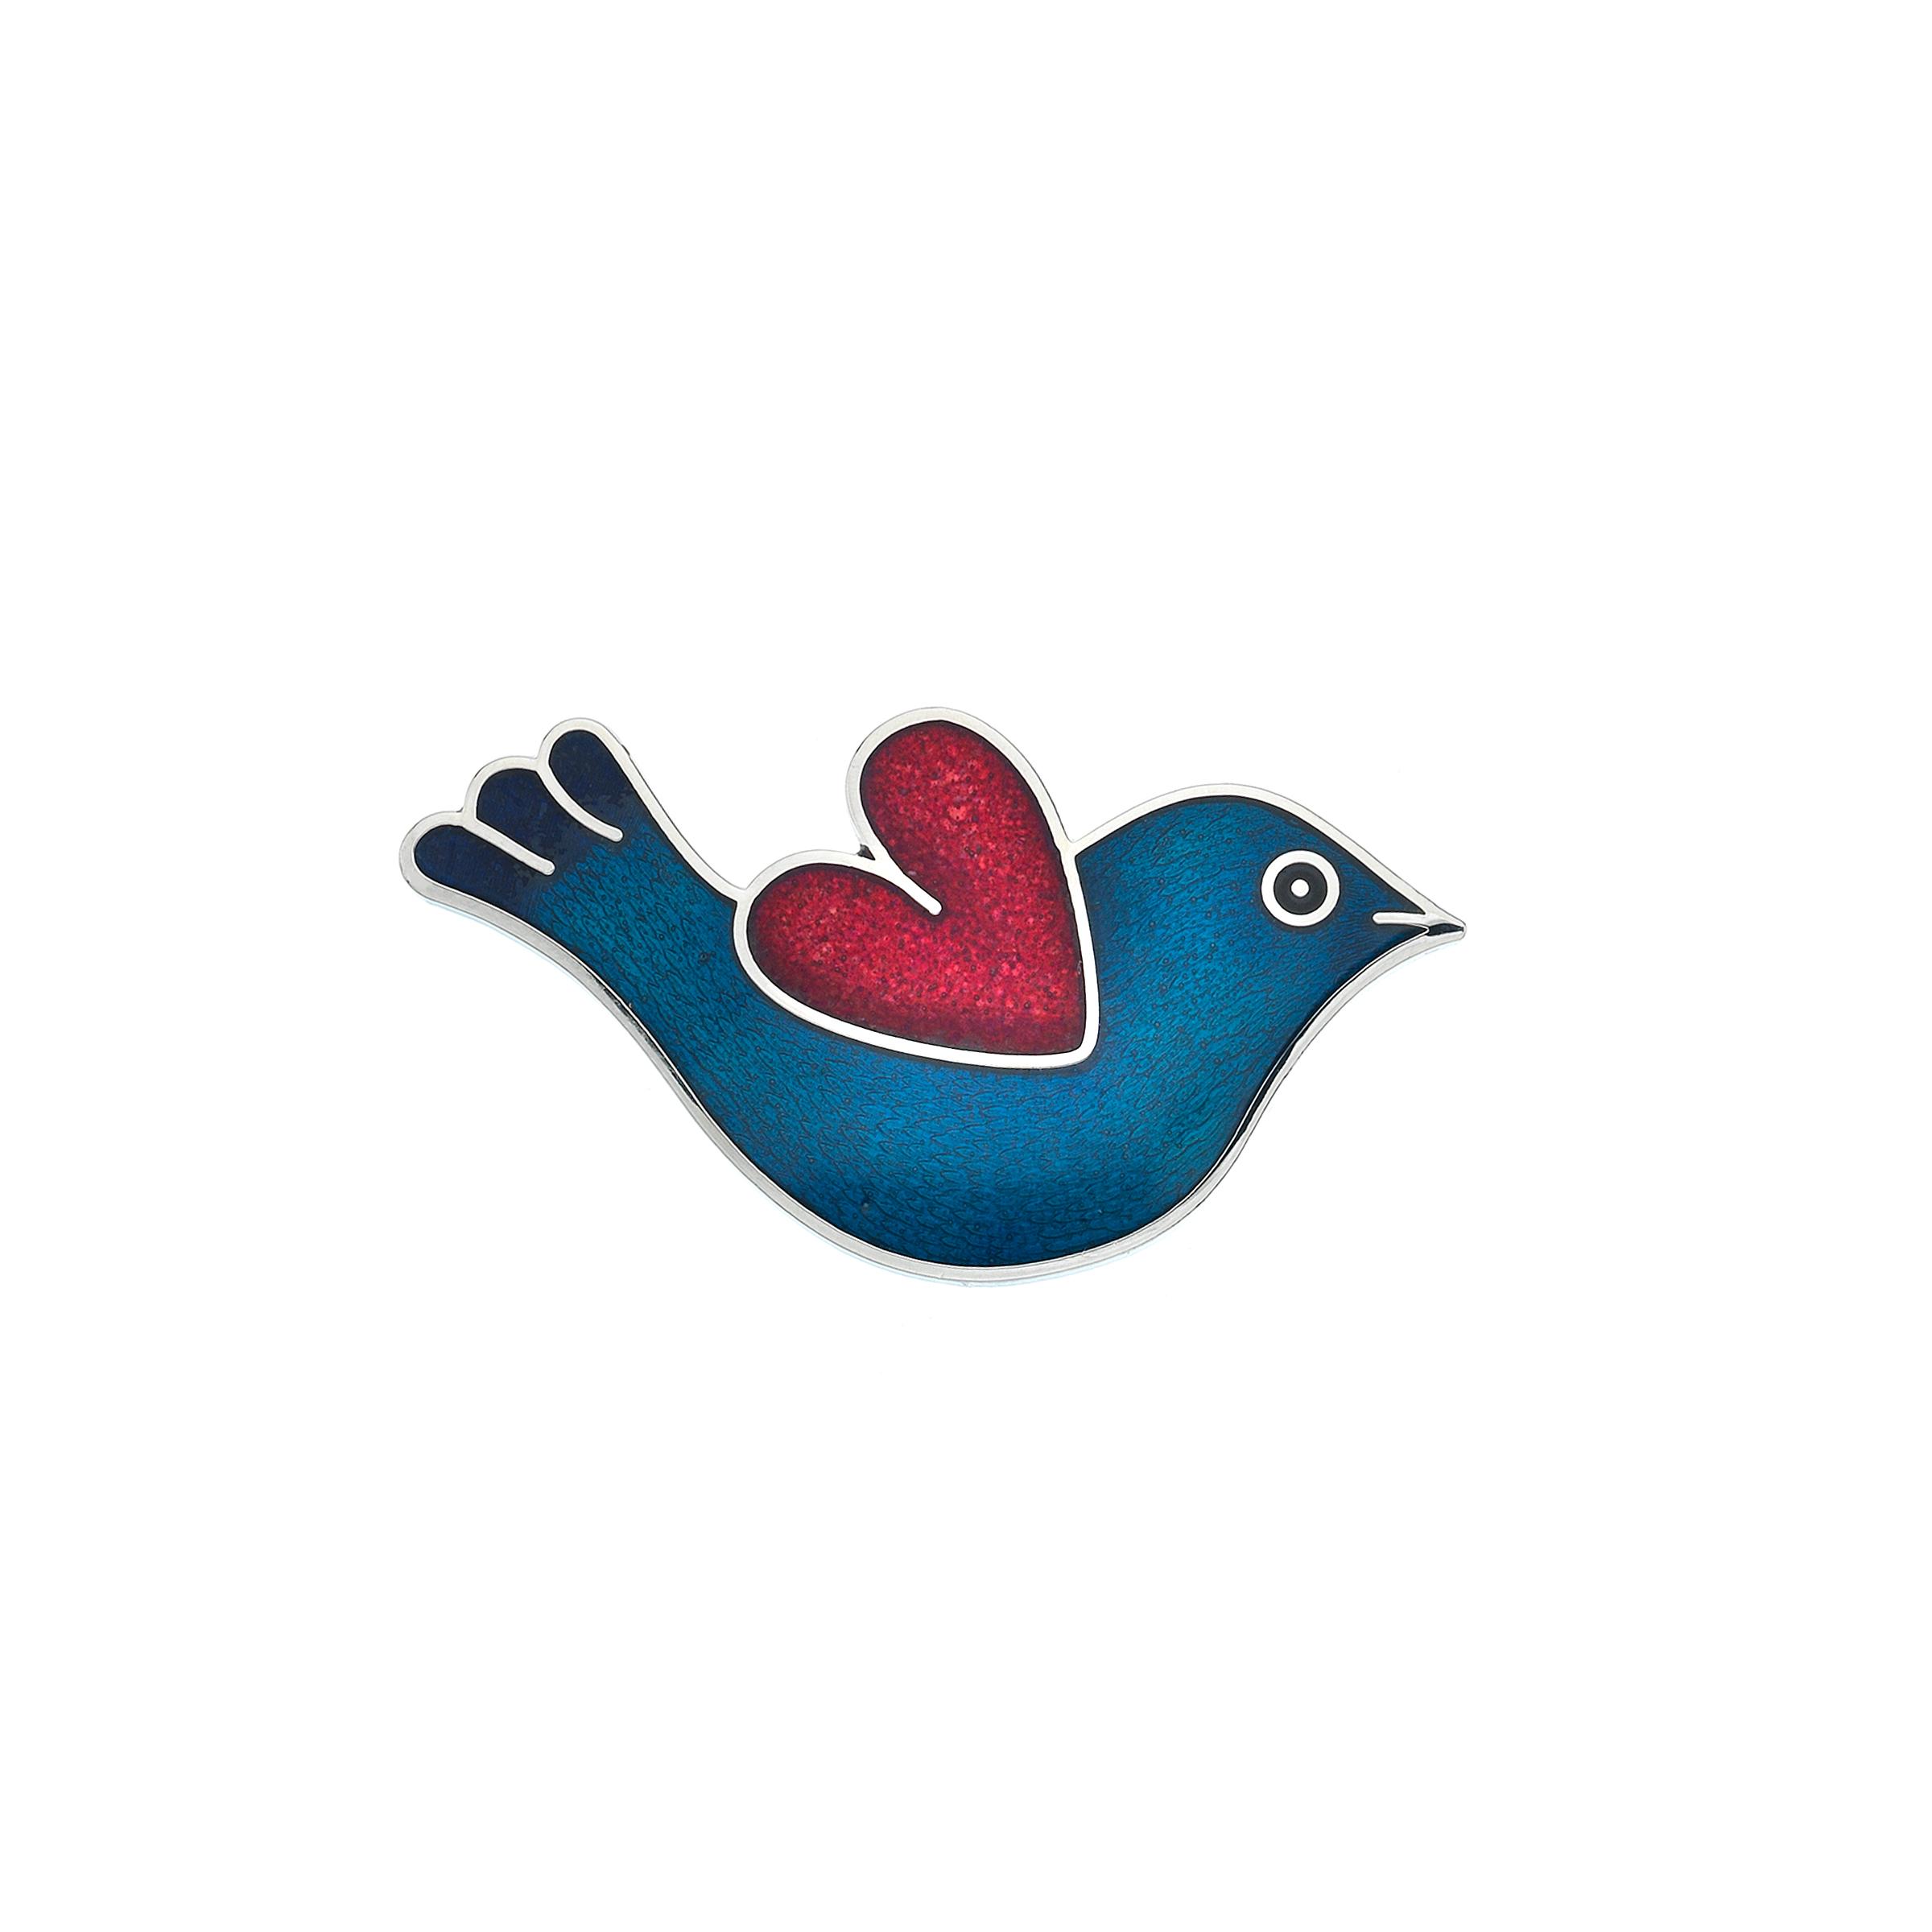 PROSS LOVE BIRD HEART, BLUE/RED